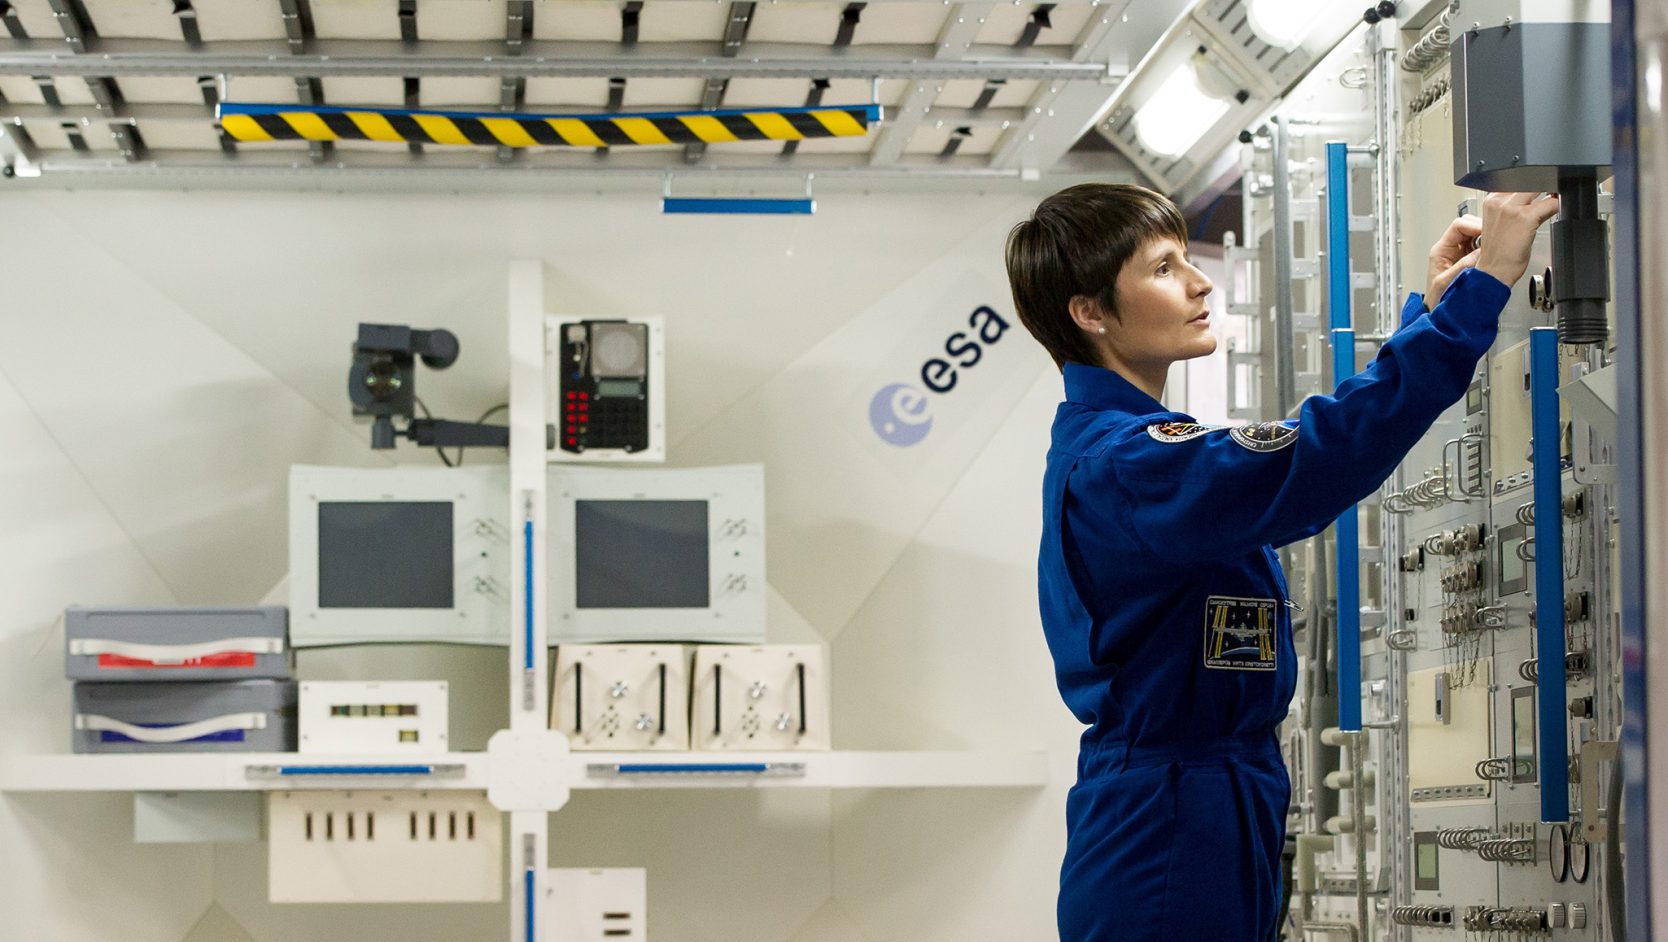 Astronautin Samantha Cristoforetti Im Deutschen Zentrum für Luft- und Raumfahrt in Köln bei der Arbeit.